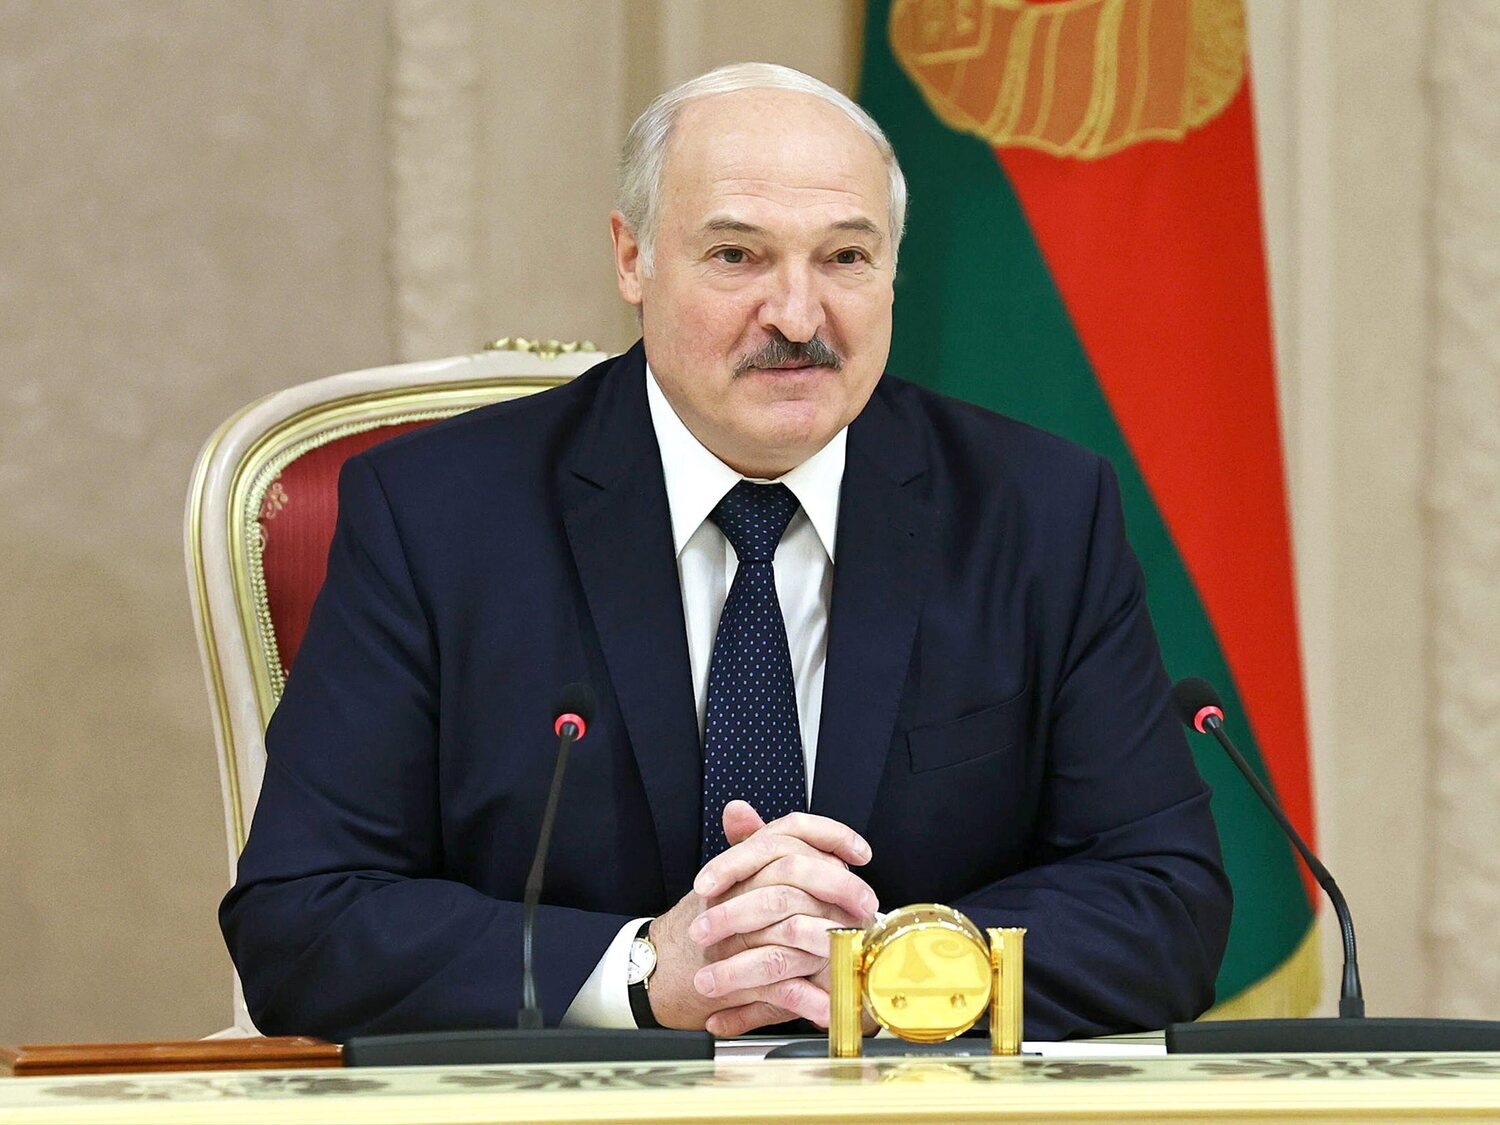 Alexander Lukashenko, el último dictador de Europa que reprime Bielorrusia con puño de hierro